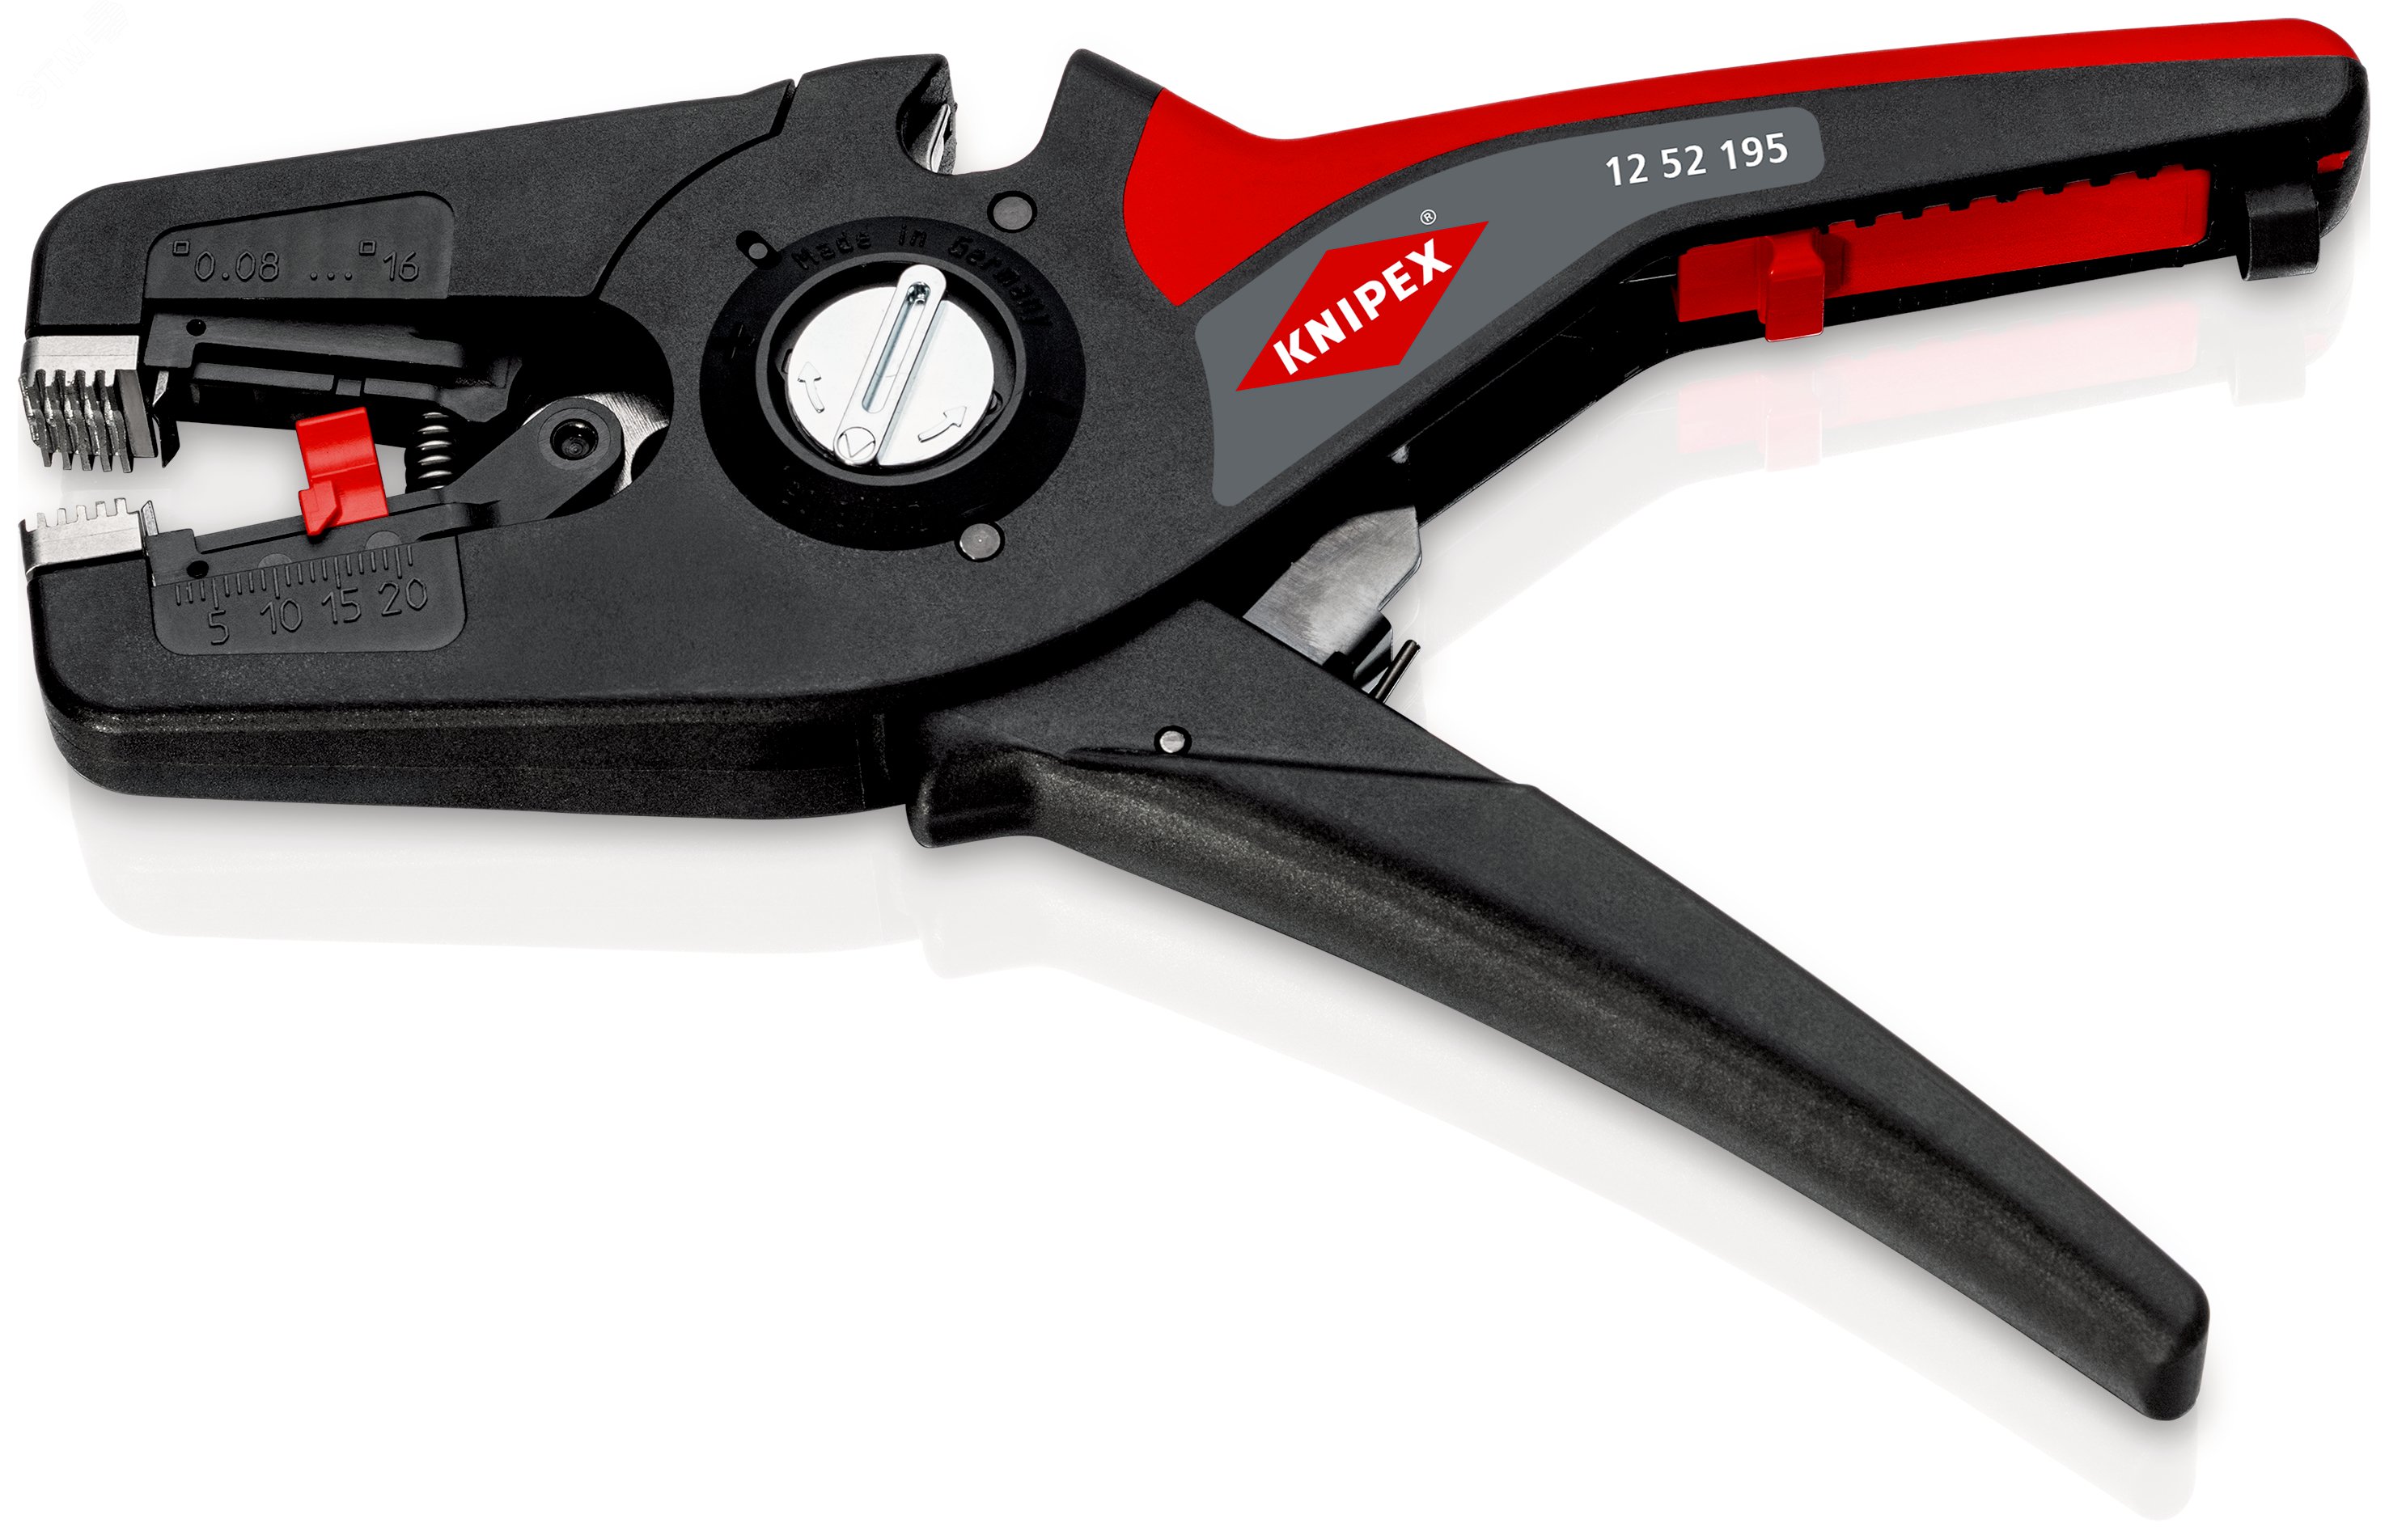 Стриппер автоматический PreciSTrip16 c кабелерезом быстросменный блок ножей зачистка: 008 - 16 мм (AWG 28 - 5) L-195 мм с держателем для торгового оборудования KN-1252195SB KNIPEX - превью 4